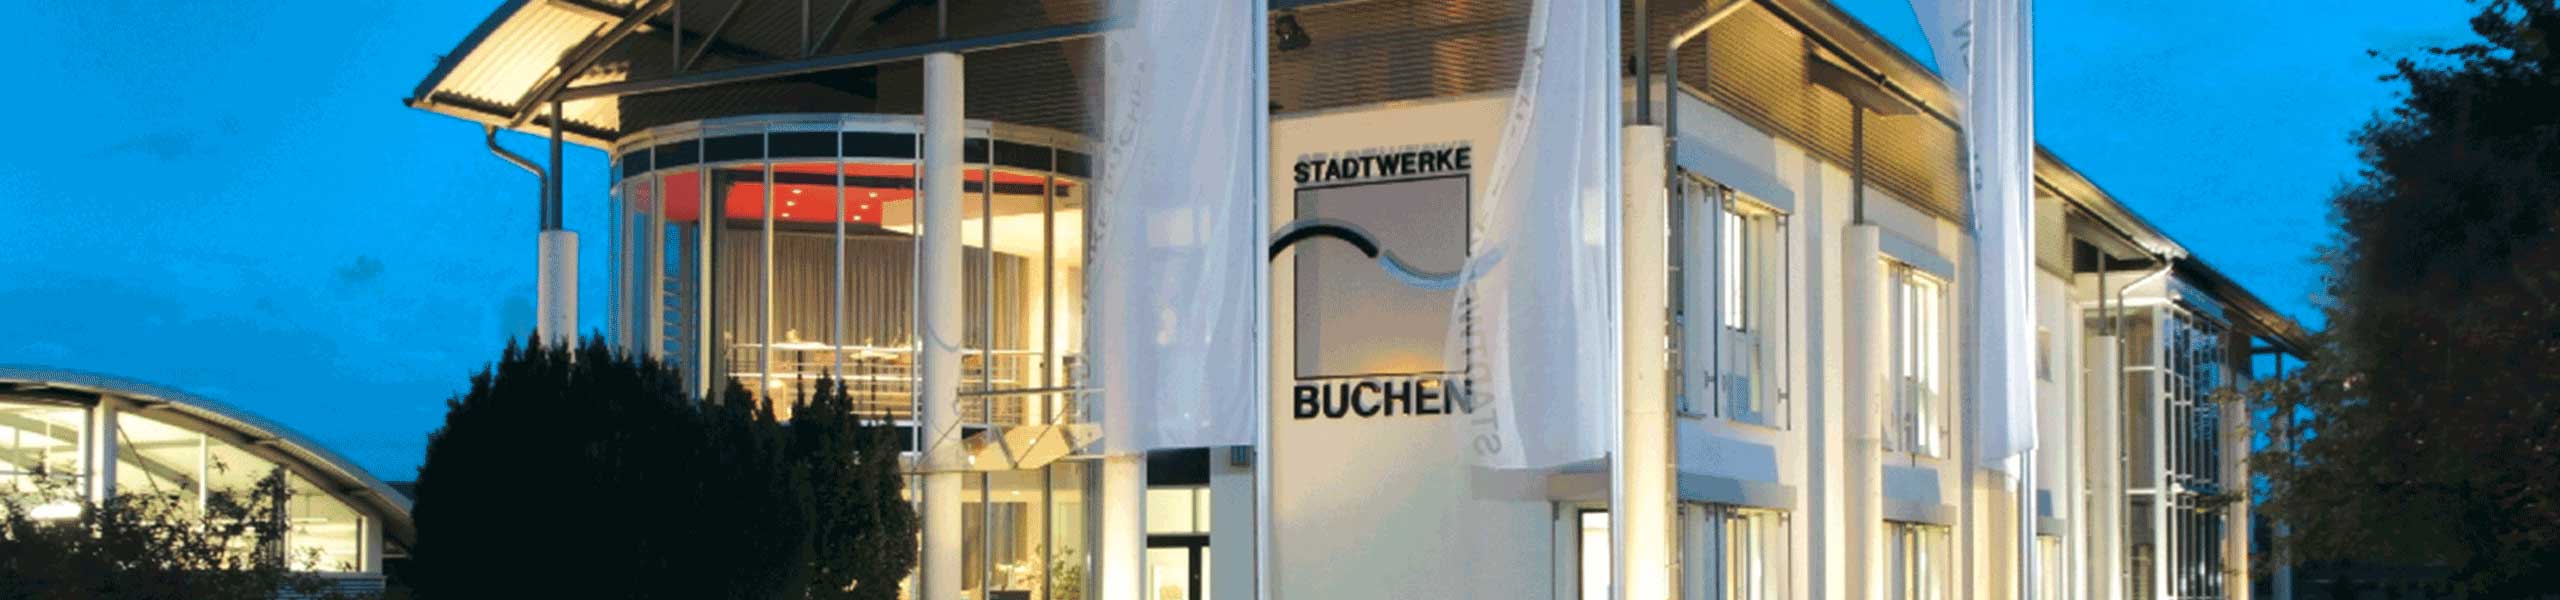 Stadtwerke Buchen GmbH & Co KG - Ihr Versorger vor Ort - Unterneudorf